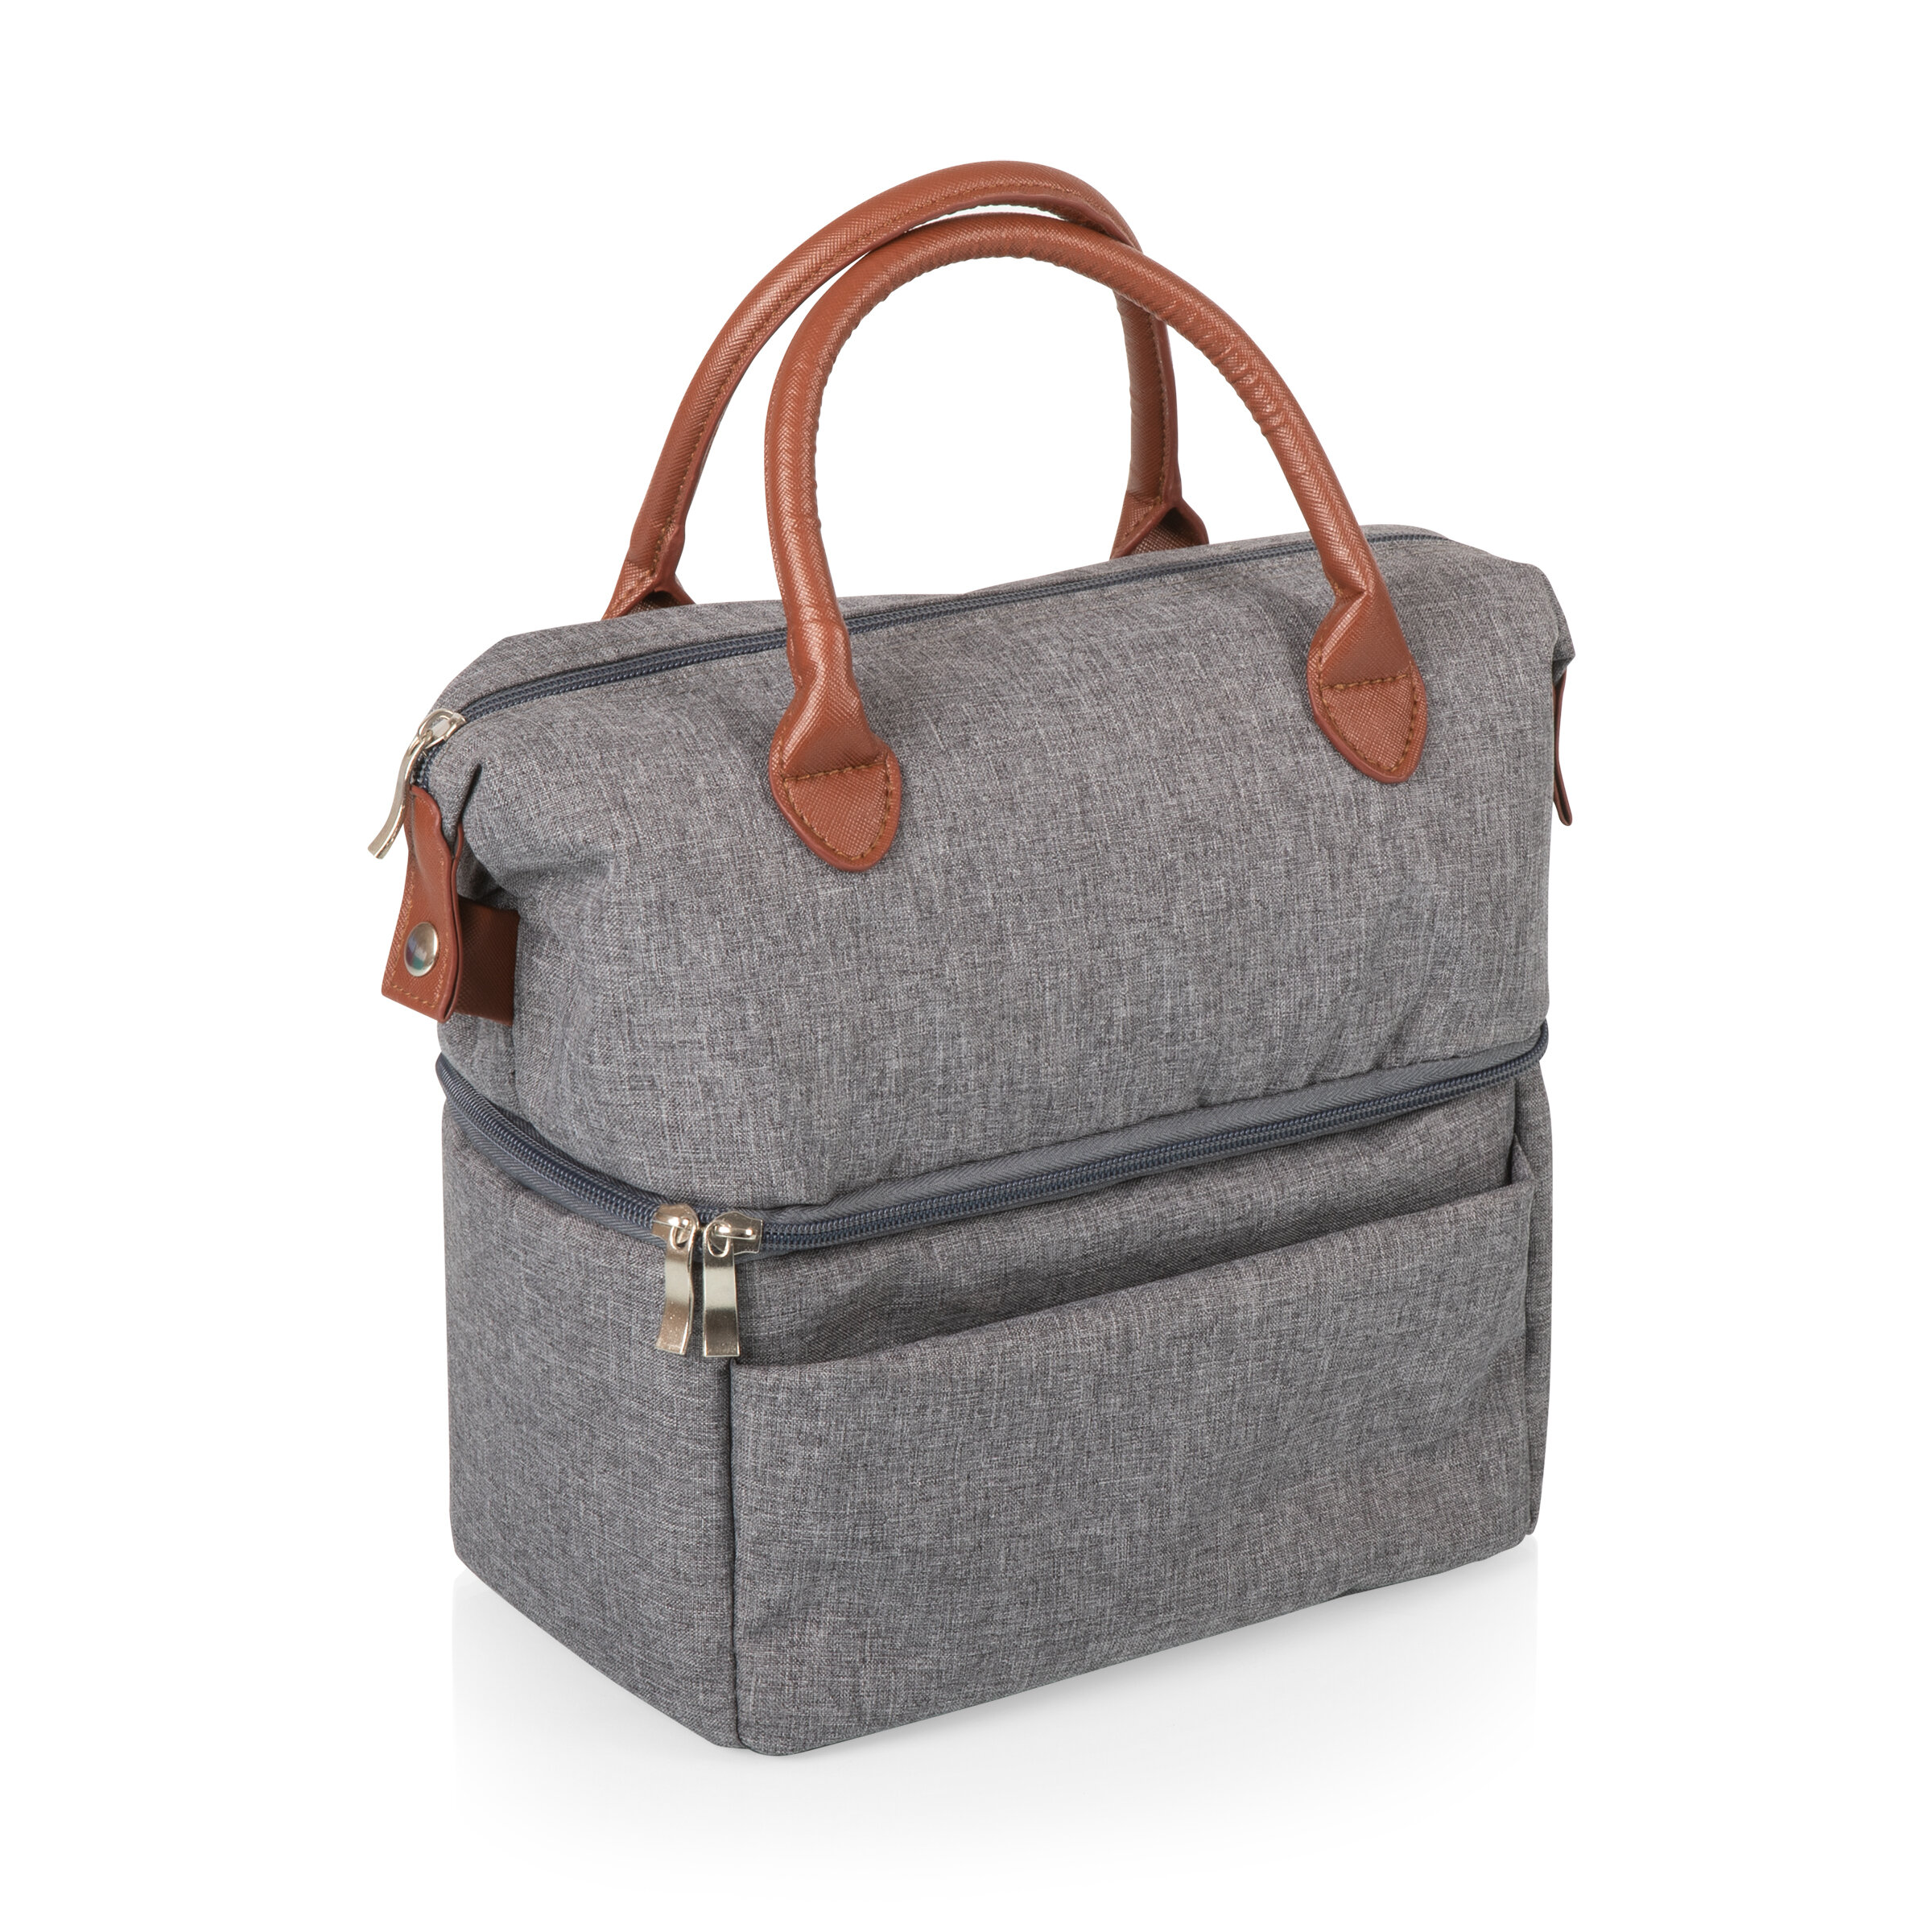 ONIVA™ 13.5 Qt. Urban Lunch Bag Cooler & Reviews | Wayfair